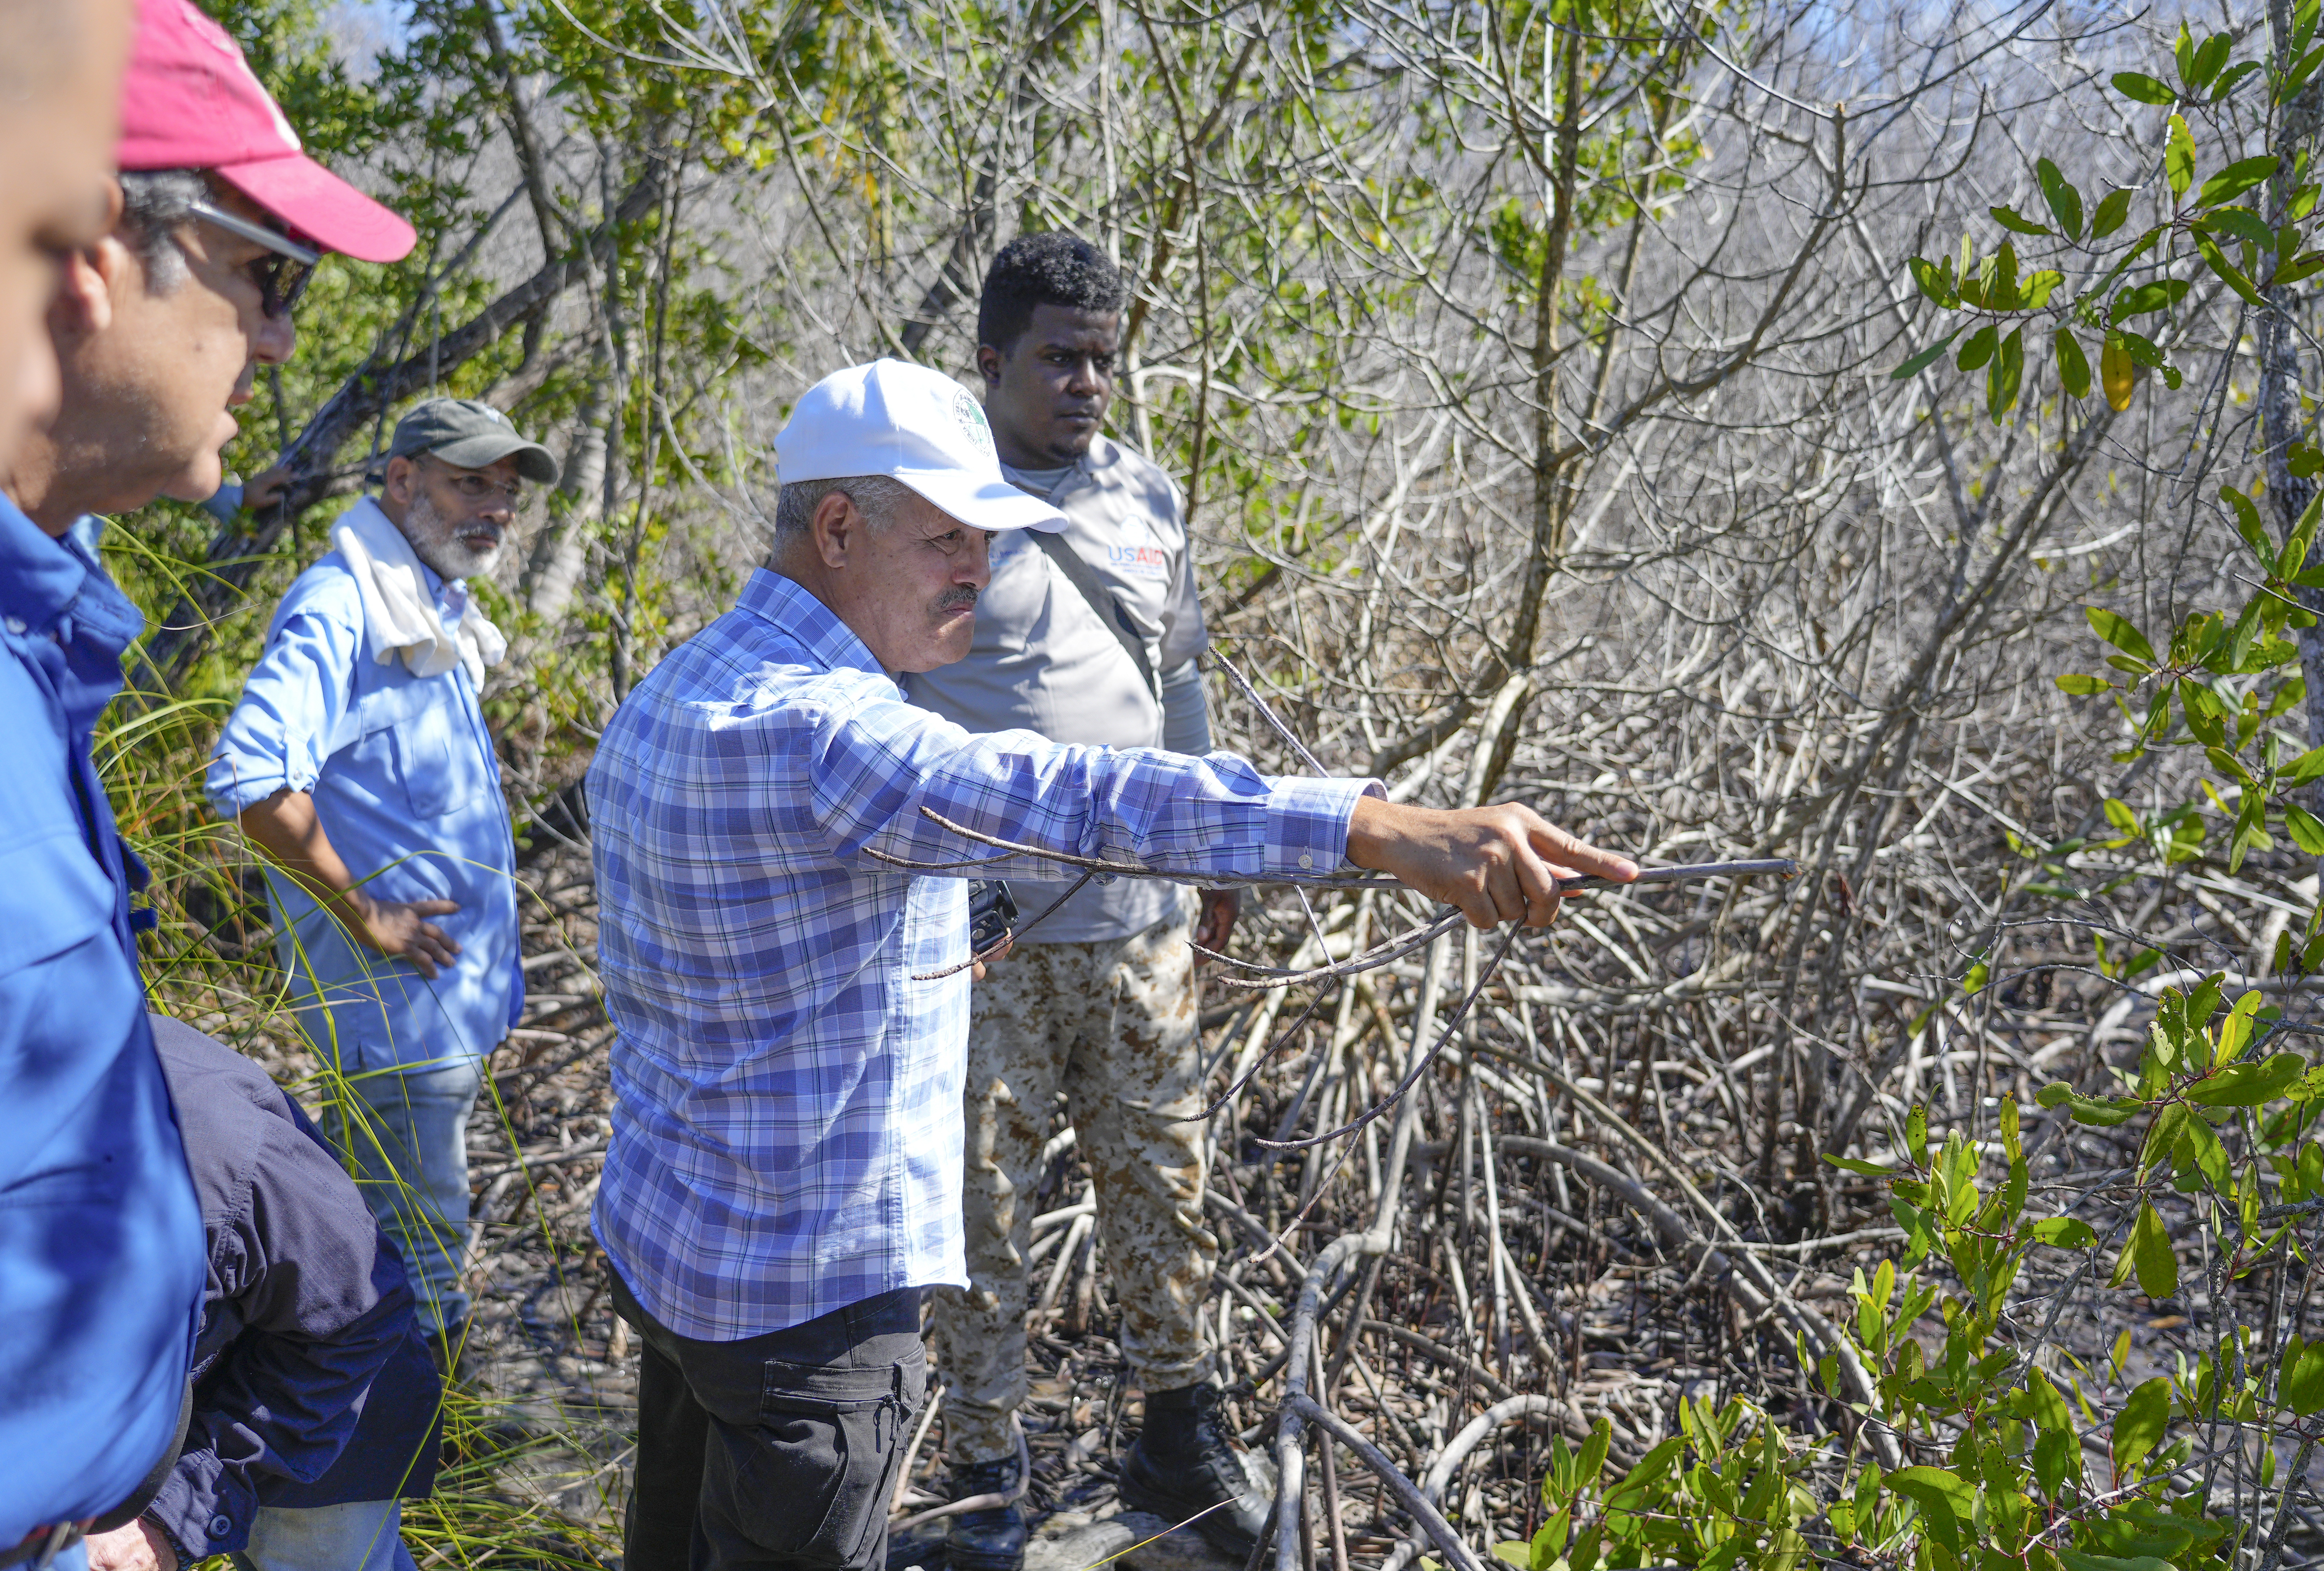 REPÚBLICA DOMINICANA: Biólogos y técnicos de Medio Ambiente acompañan a fiscales, académicos y ambientalistas en evaluación de manglar afectado en Las Terrenas